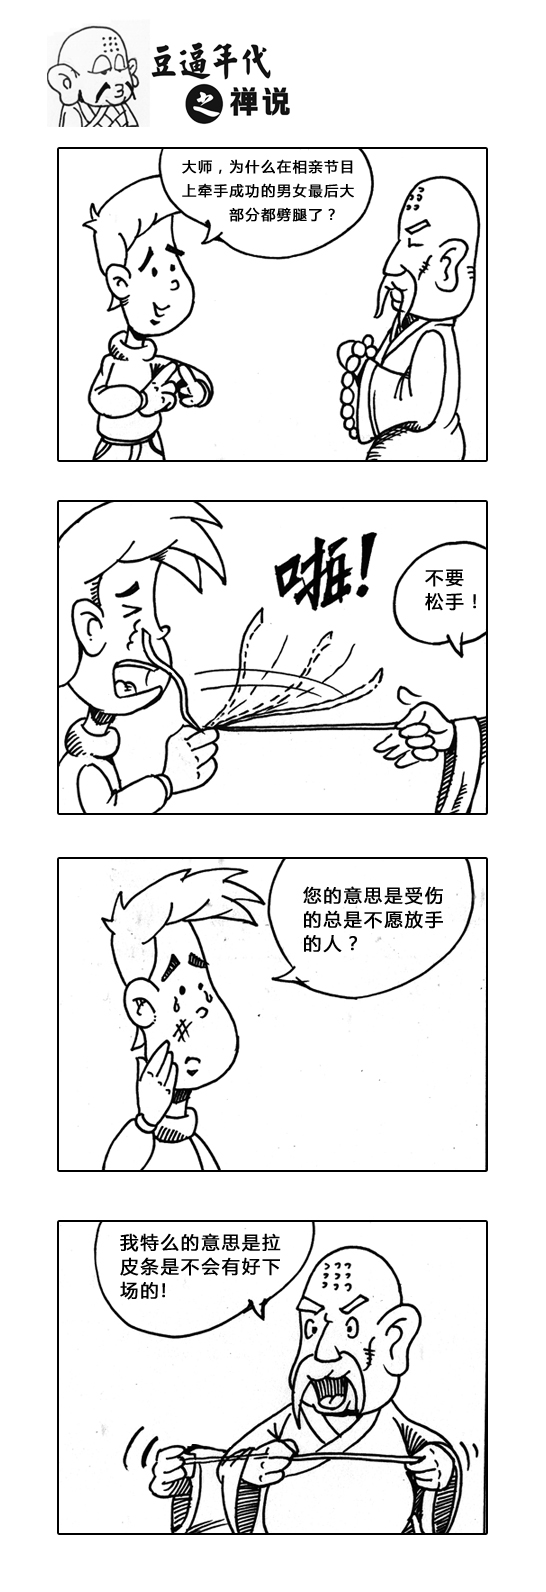 豌豆公寓特约之逗逼年代四格漫画连载|短篇\/四